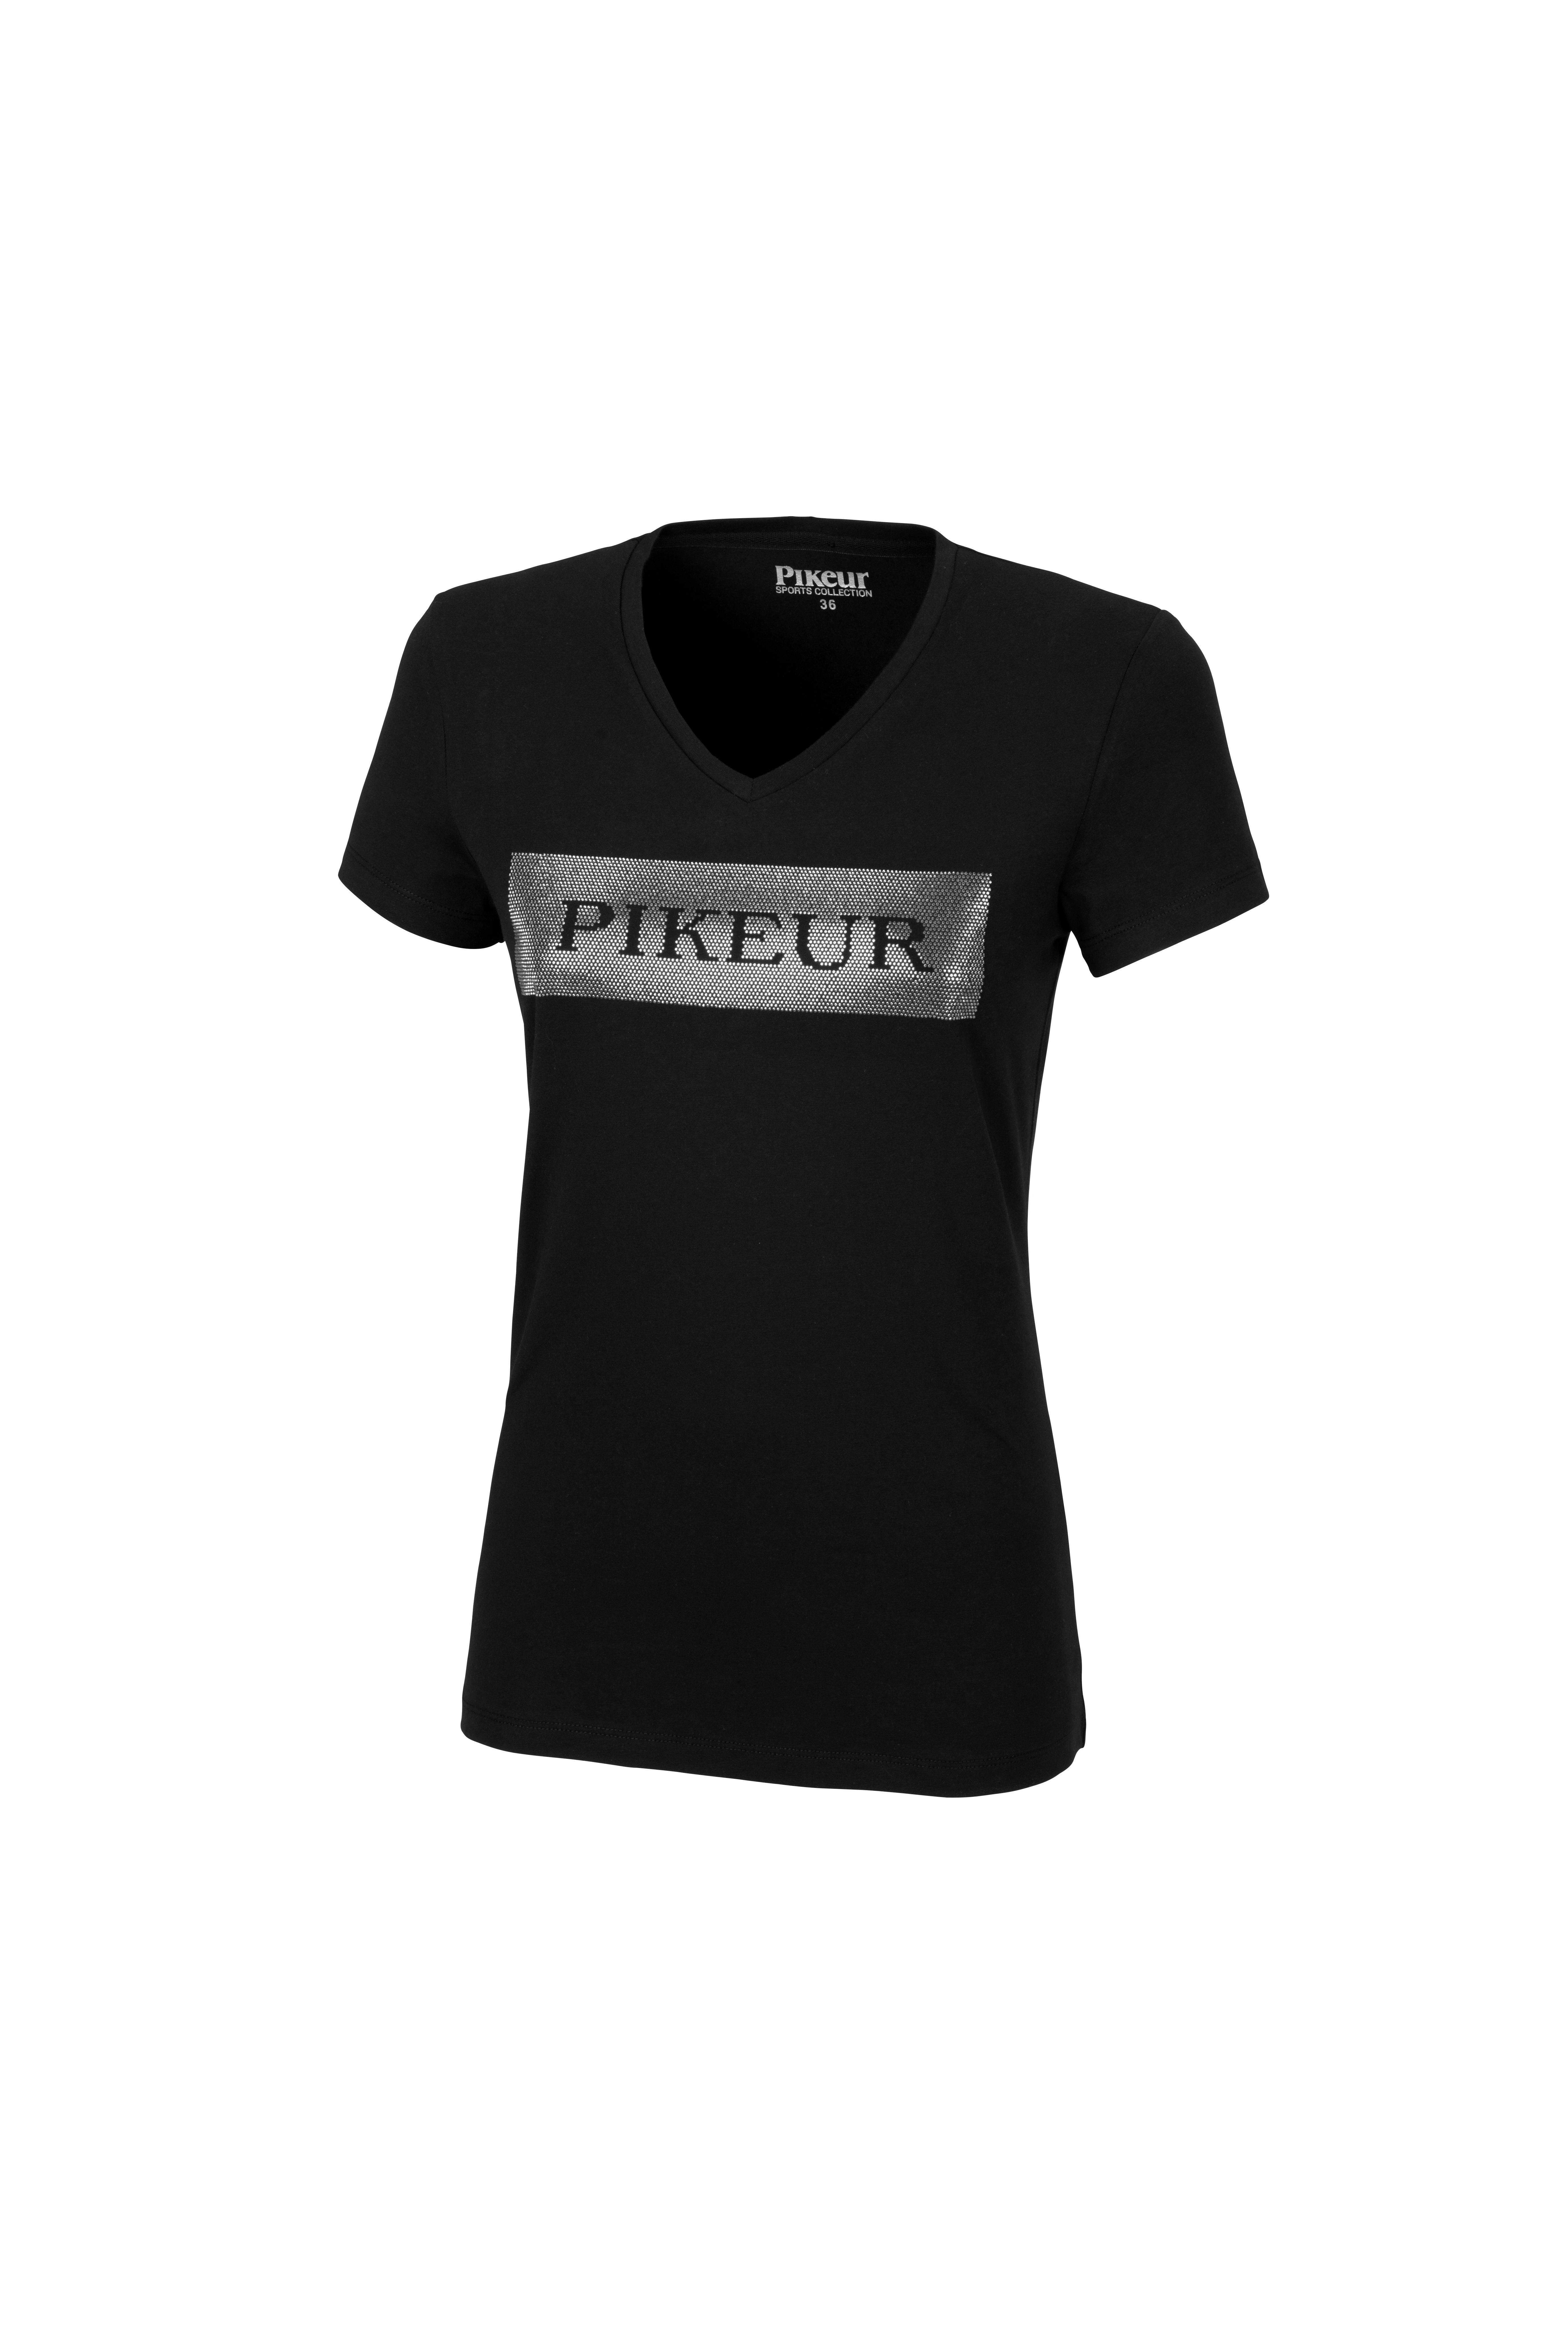 Pikeur FRANJA Shirt, Black